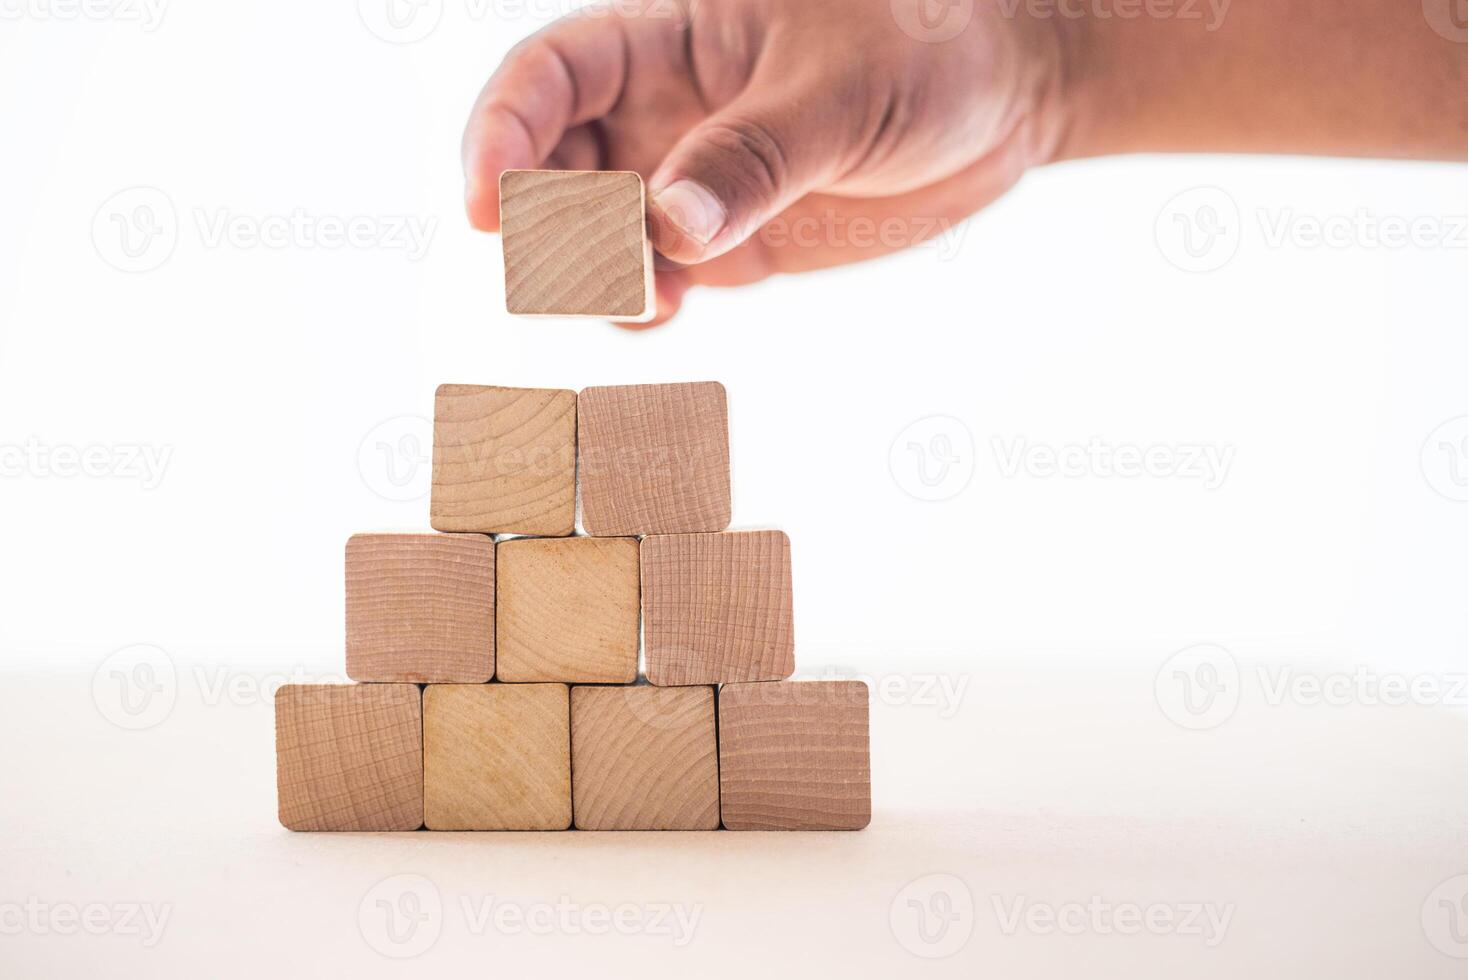 de hand- van de zakenman gevangen de houten blokken geplaatst Aan een wit achtergrond net zo een huis naar tonen de stabiliteit van aan het doen bedrijf. foto